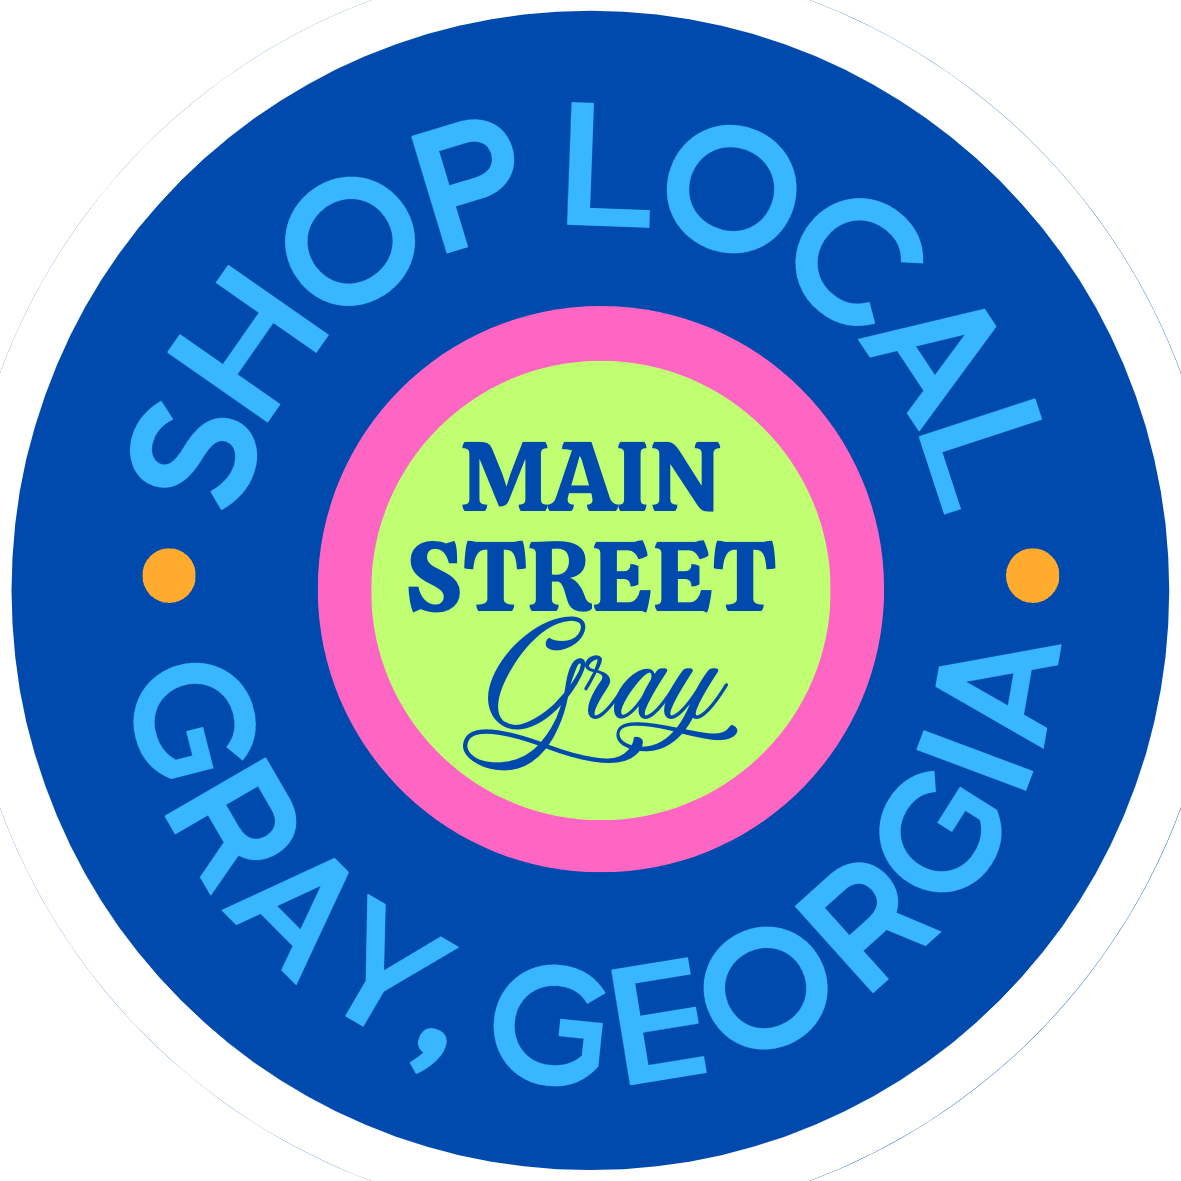 Main Street Gray logo